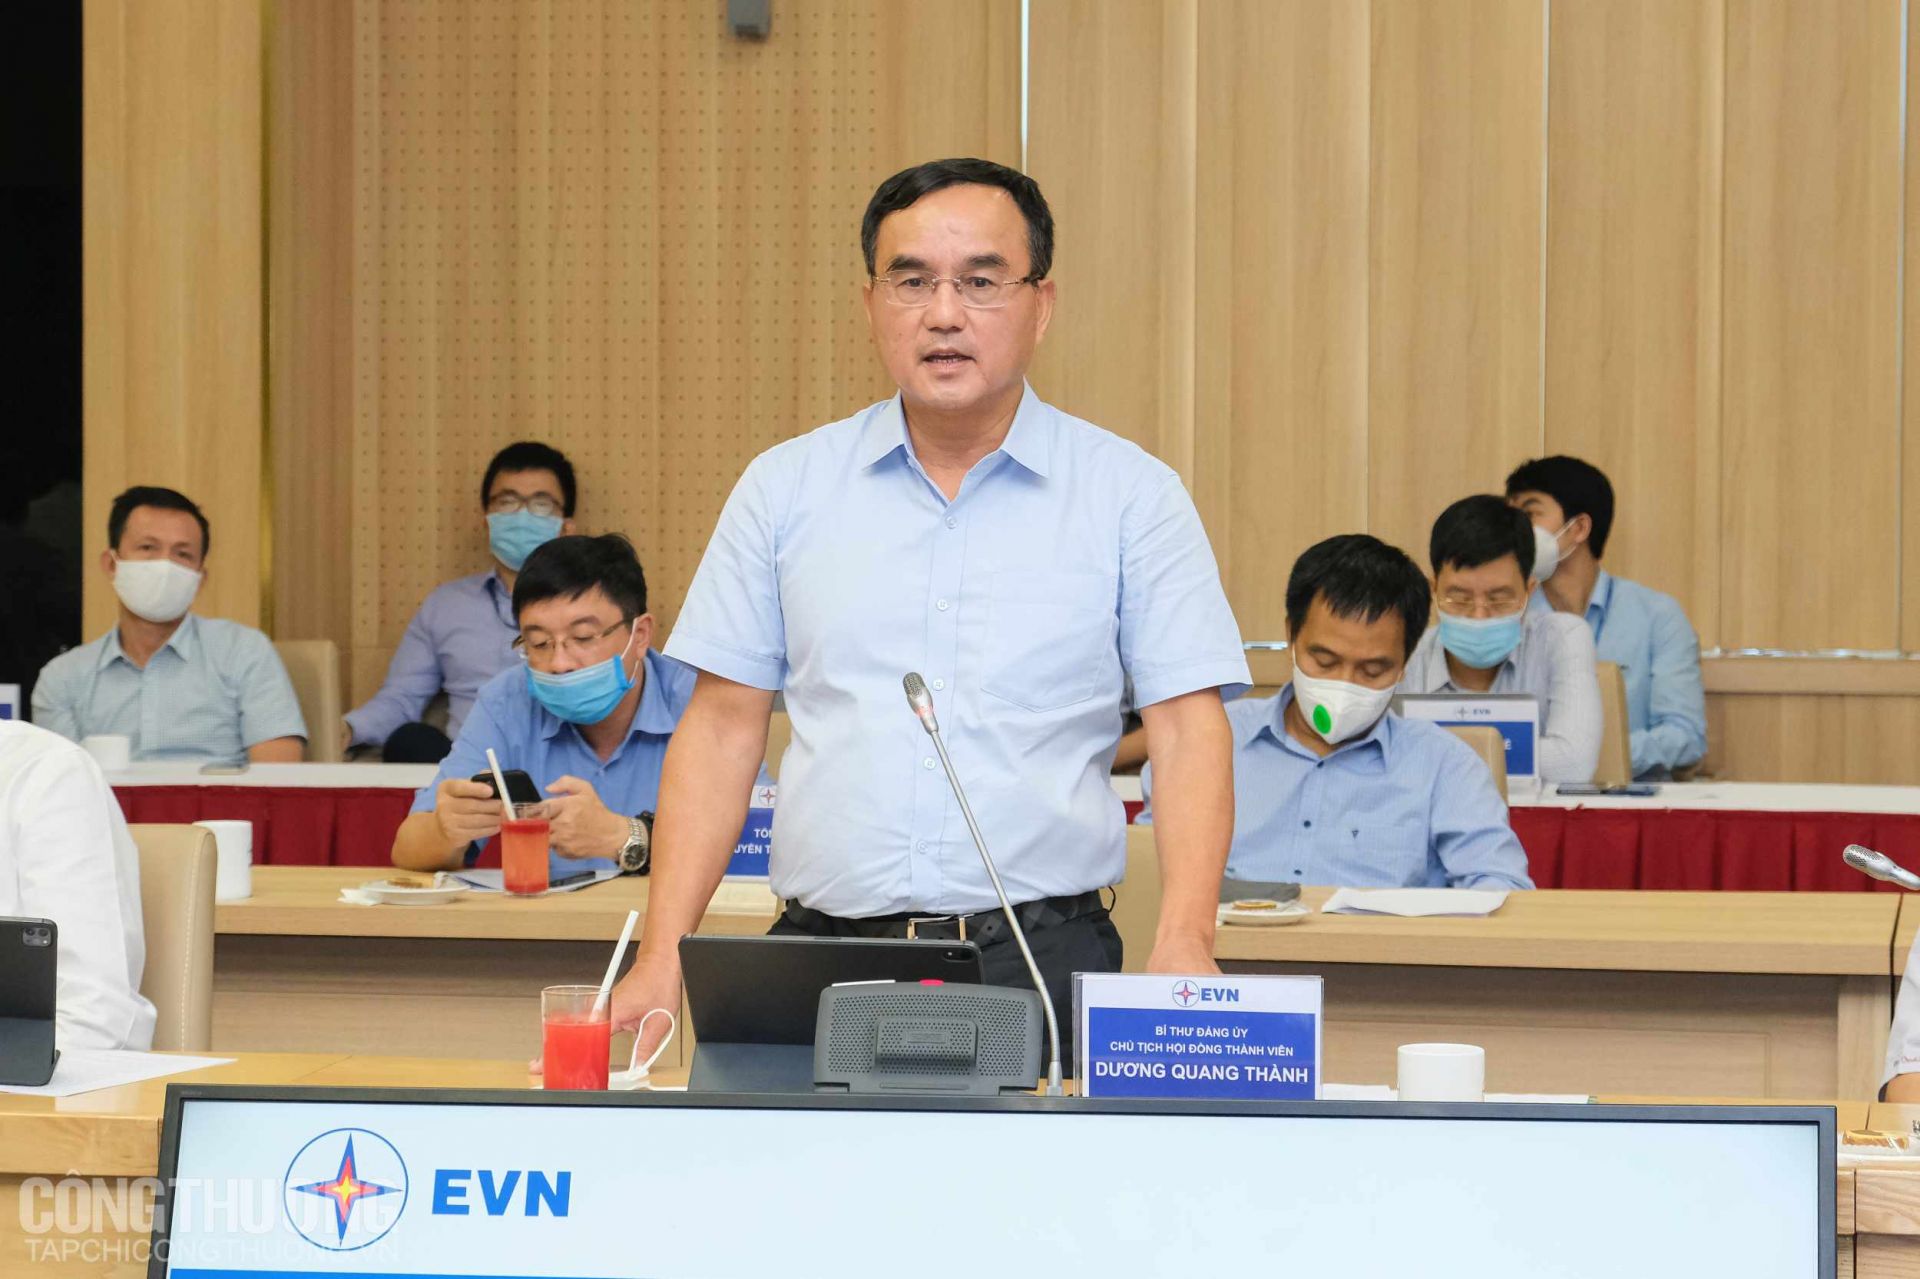 Ông Dương Quang Thành - Chủ tịch HĐTV EVN